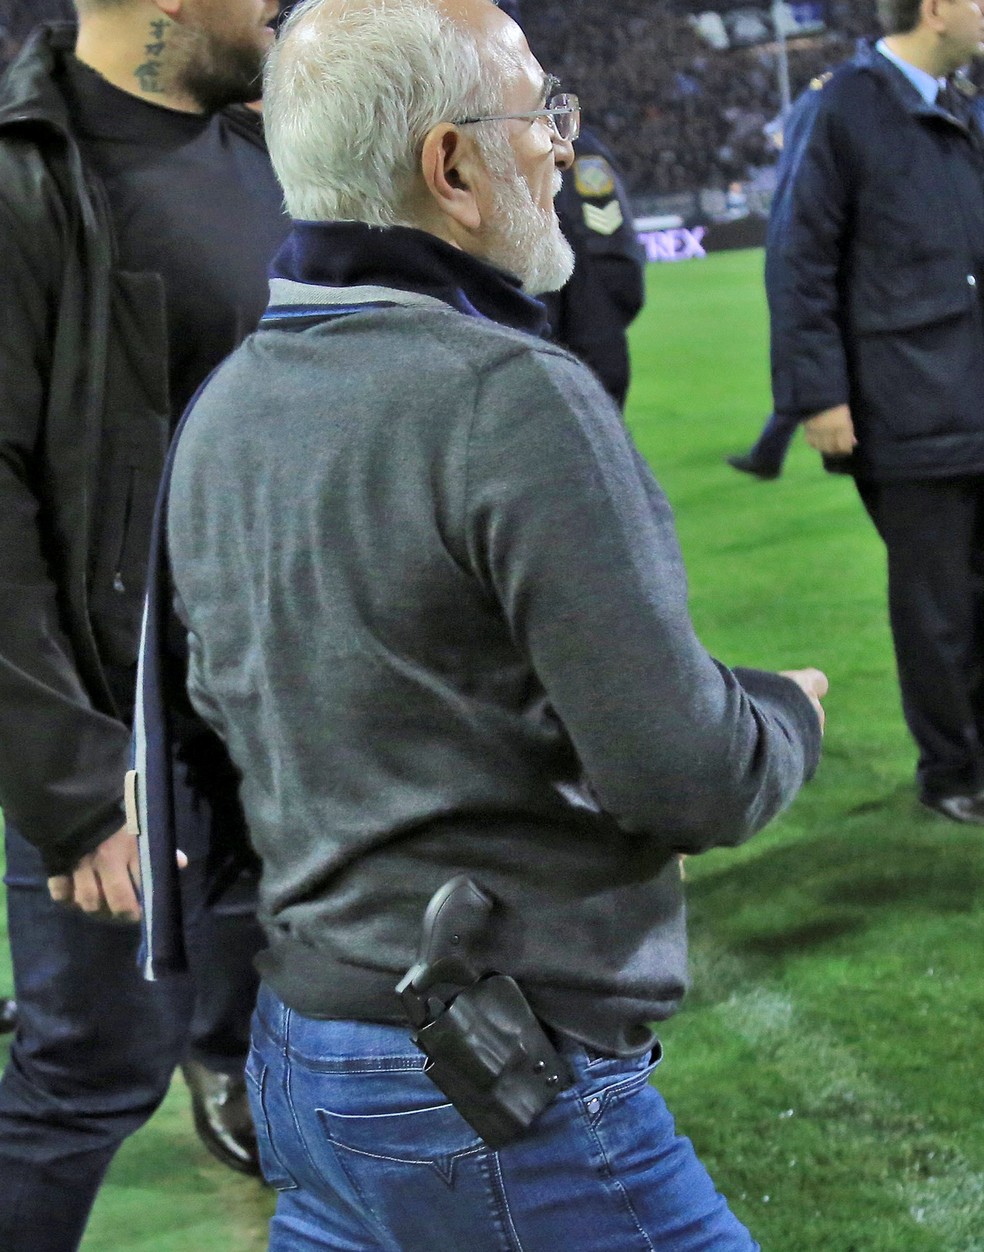 Presidente do PAOK é flagrado com arma em campo (Foto: Reuters)